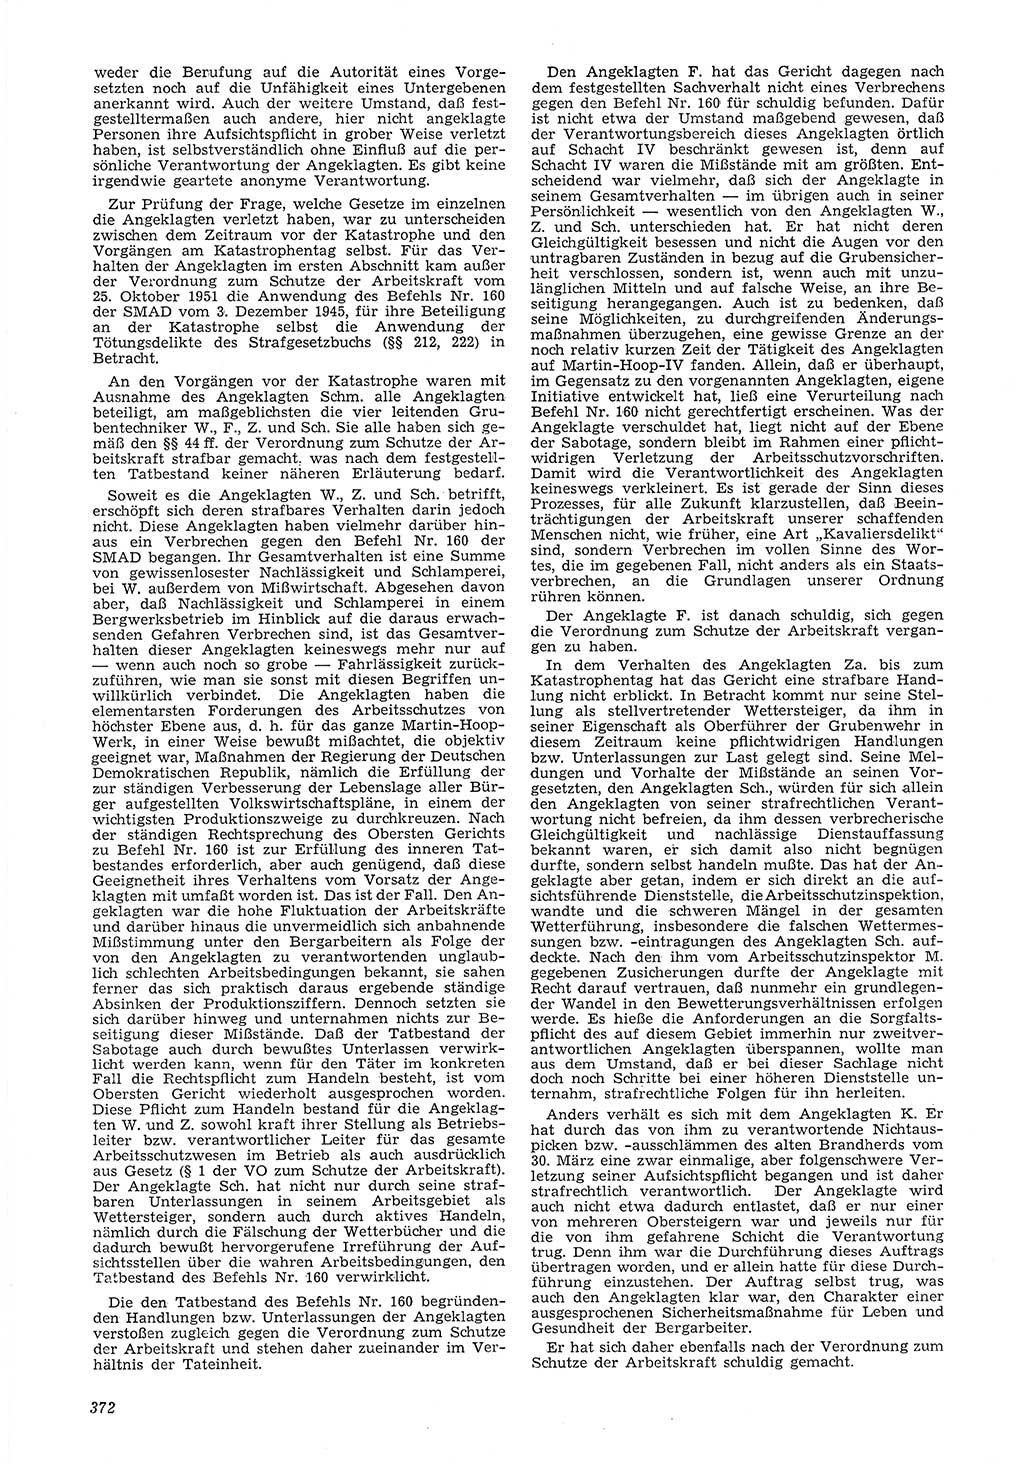 Neue Justiz (NJ), Zeitschrift für Recht und Rechtswissenschaft [Deutsche Demokratische Republik (DDR)], 6. Jahrgang 1952, Seite 372 (NJ DDR 1952, S. 372)